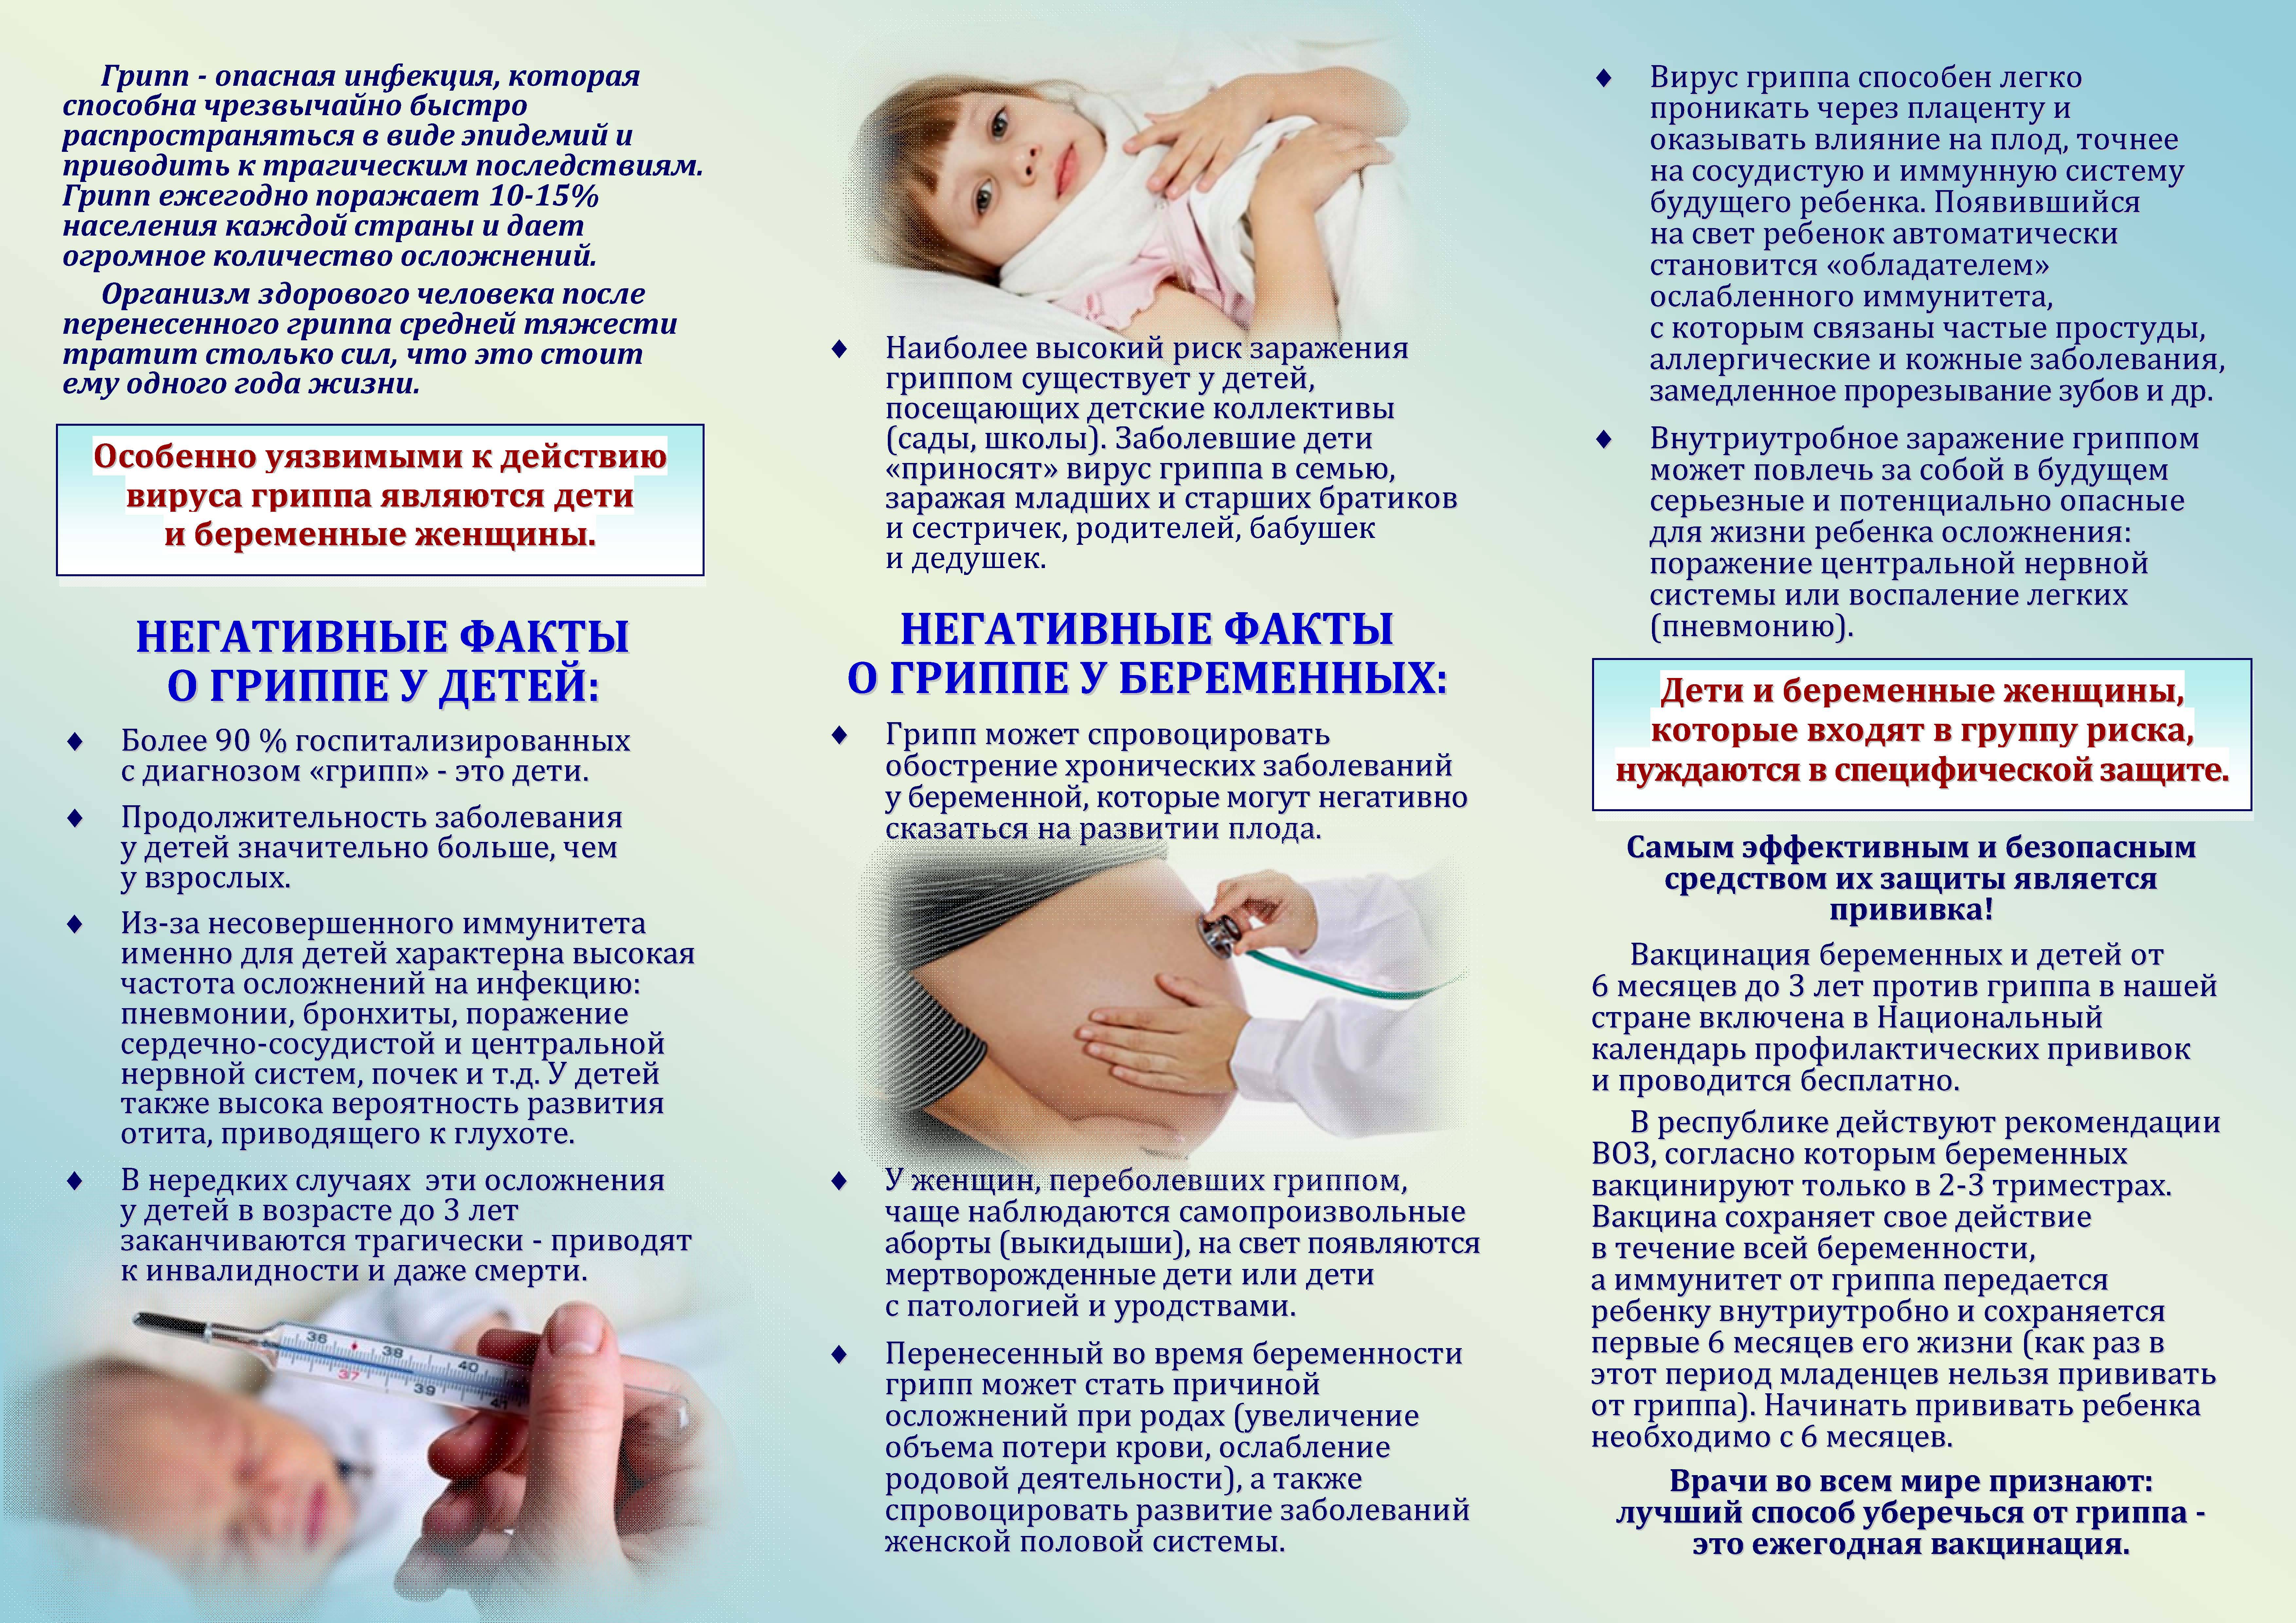 Вакцинация во время беременности - профилактика гриппа и орви - официальный сайт роспотребнадзора